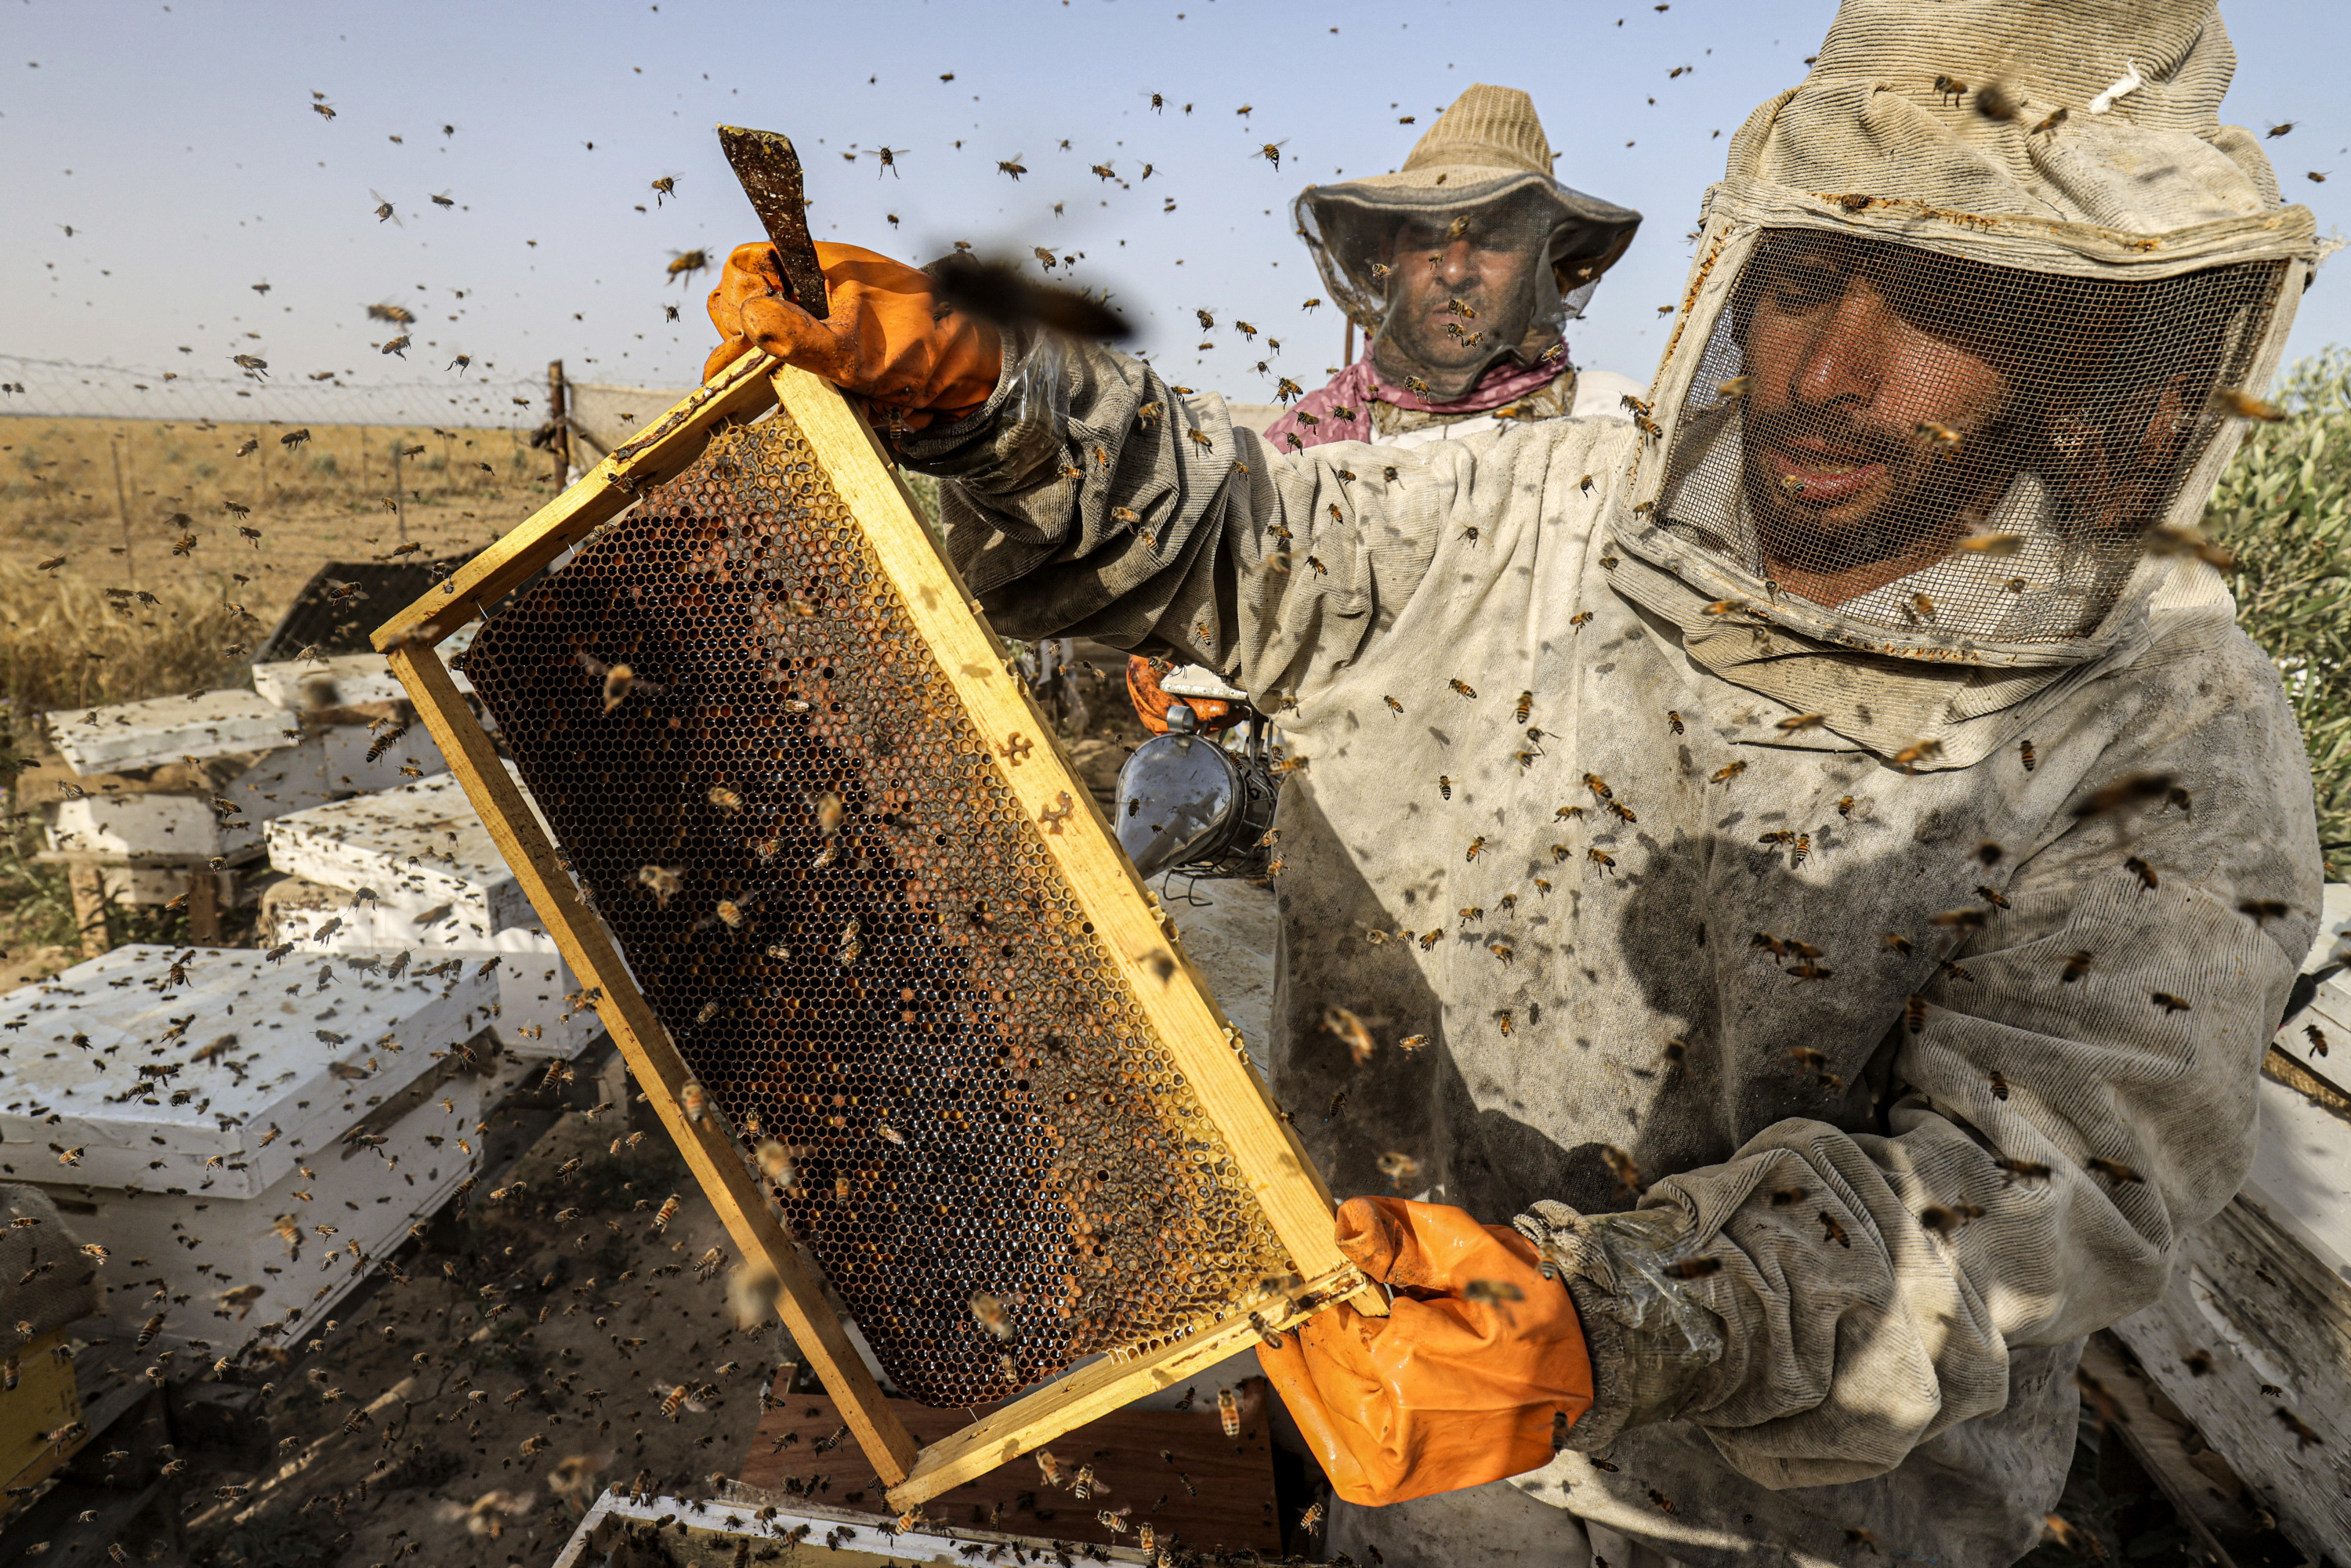 Installer une ruche dans sa cour, la solution pour sauver les